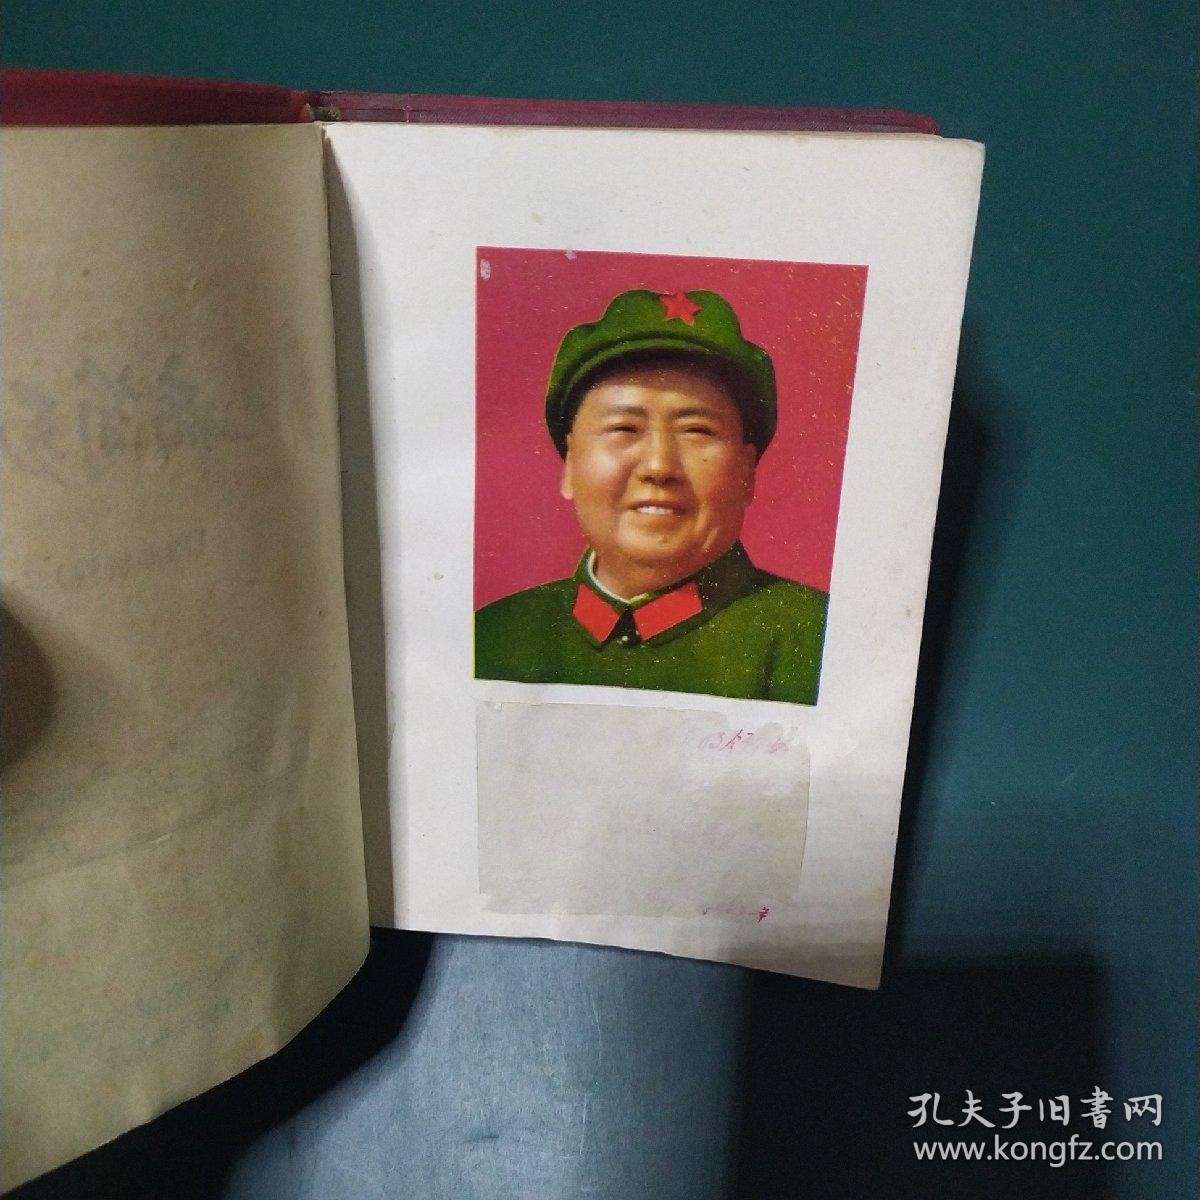 常见病简易中医疗法 北京中医学院1969年带毛主席像 正版珍本大量珍贵中医处方，验方，秘方，品相完好干净无涂画。。